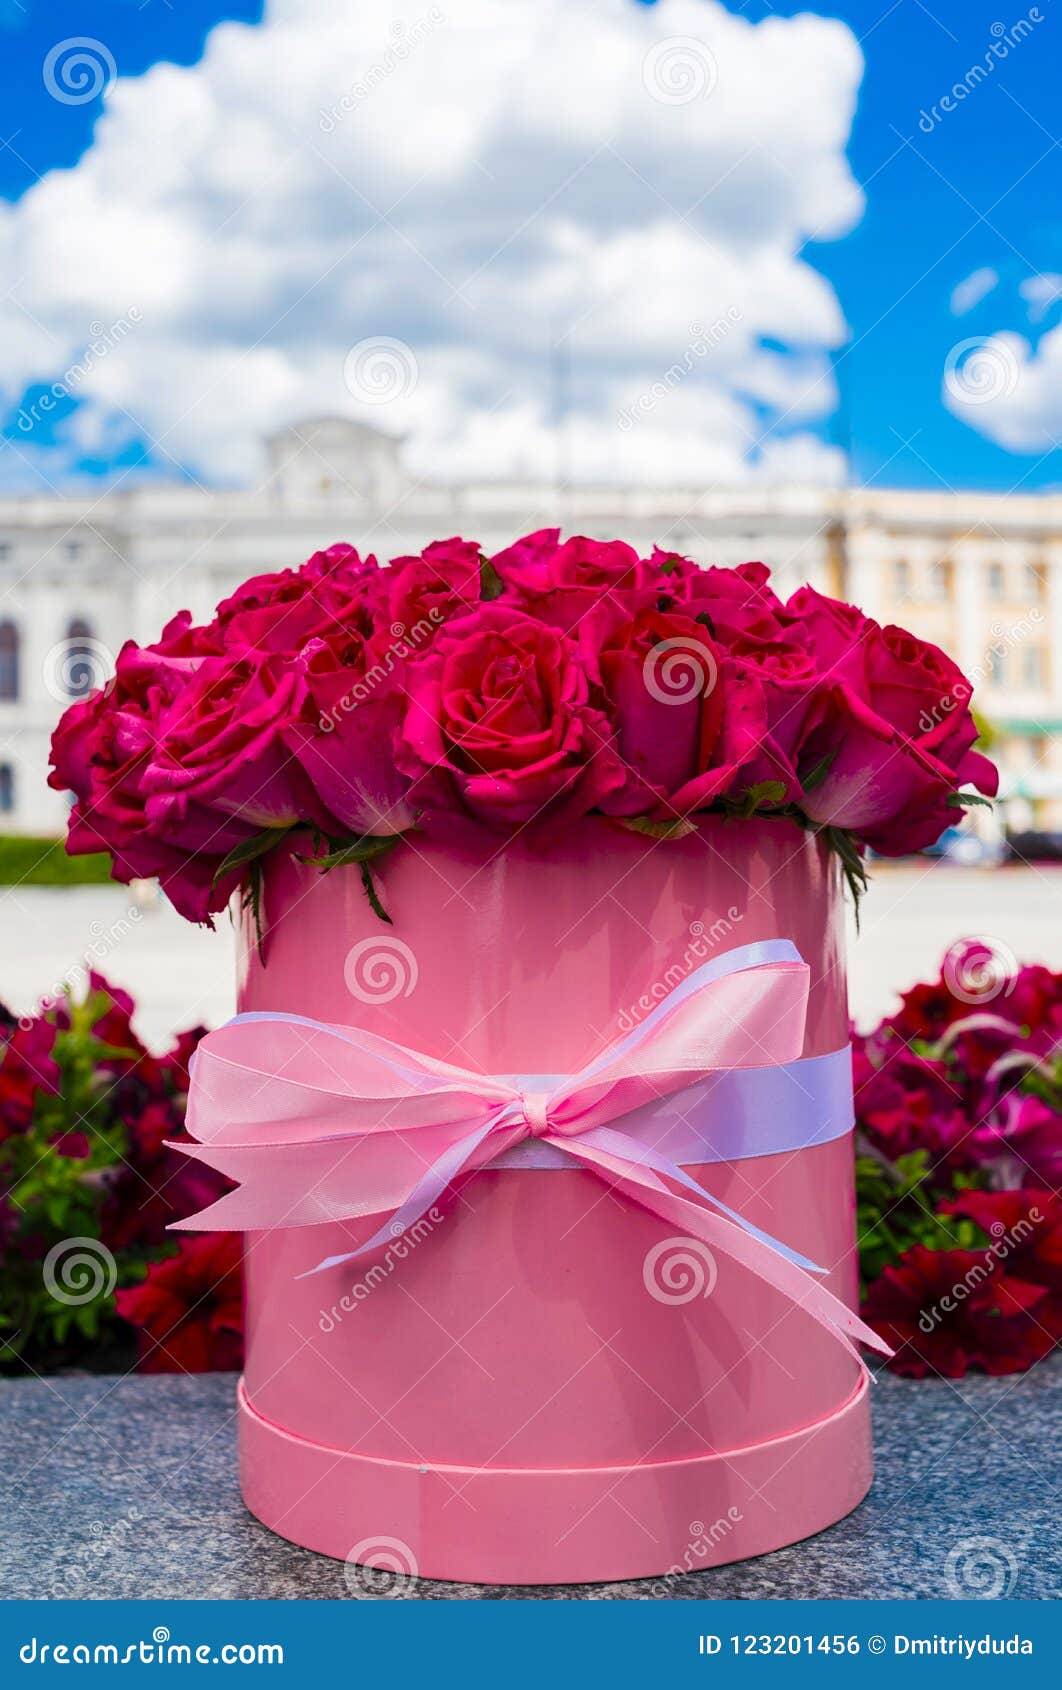 Blush! Livraison de boîtes à fleurs fraîches premium - Floralbox